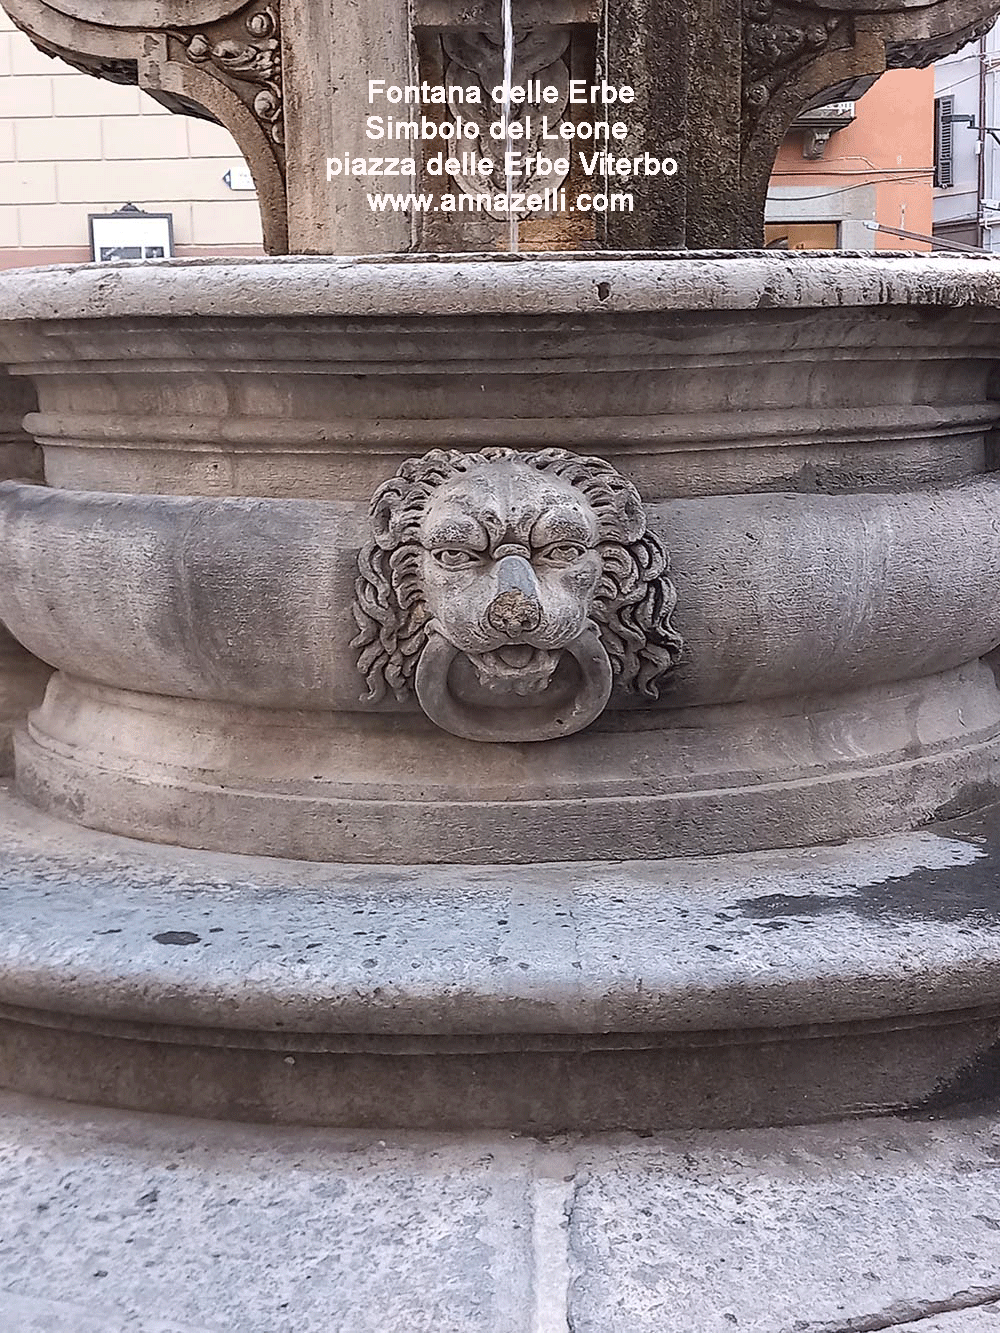 stemma simbolo del leone fontana piazza delle erbe viterbo info e foto anna zelli